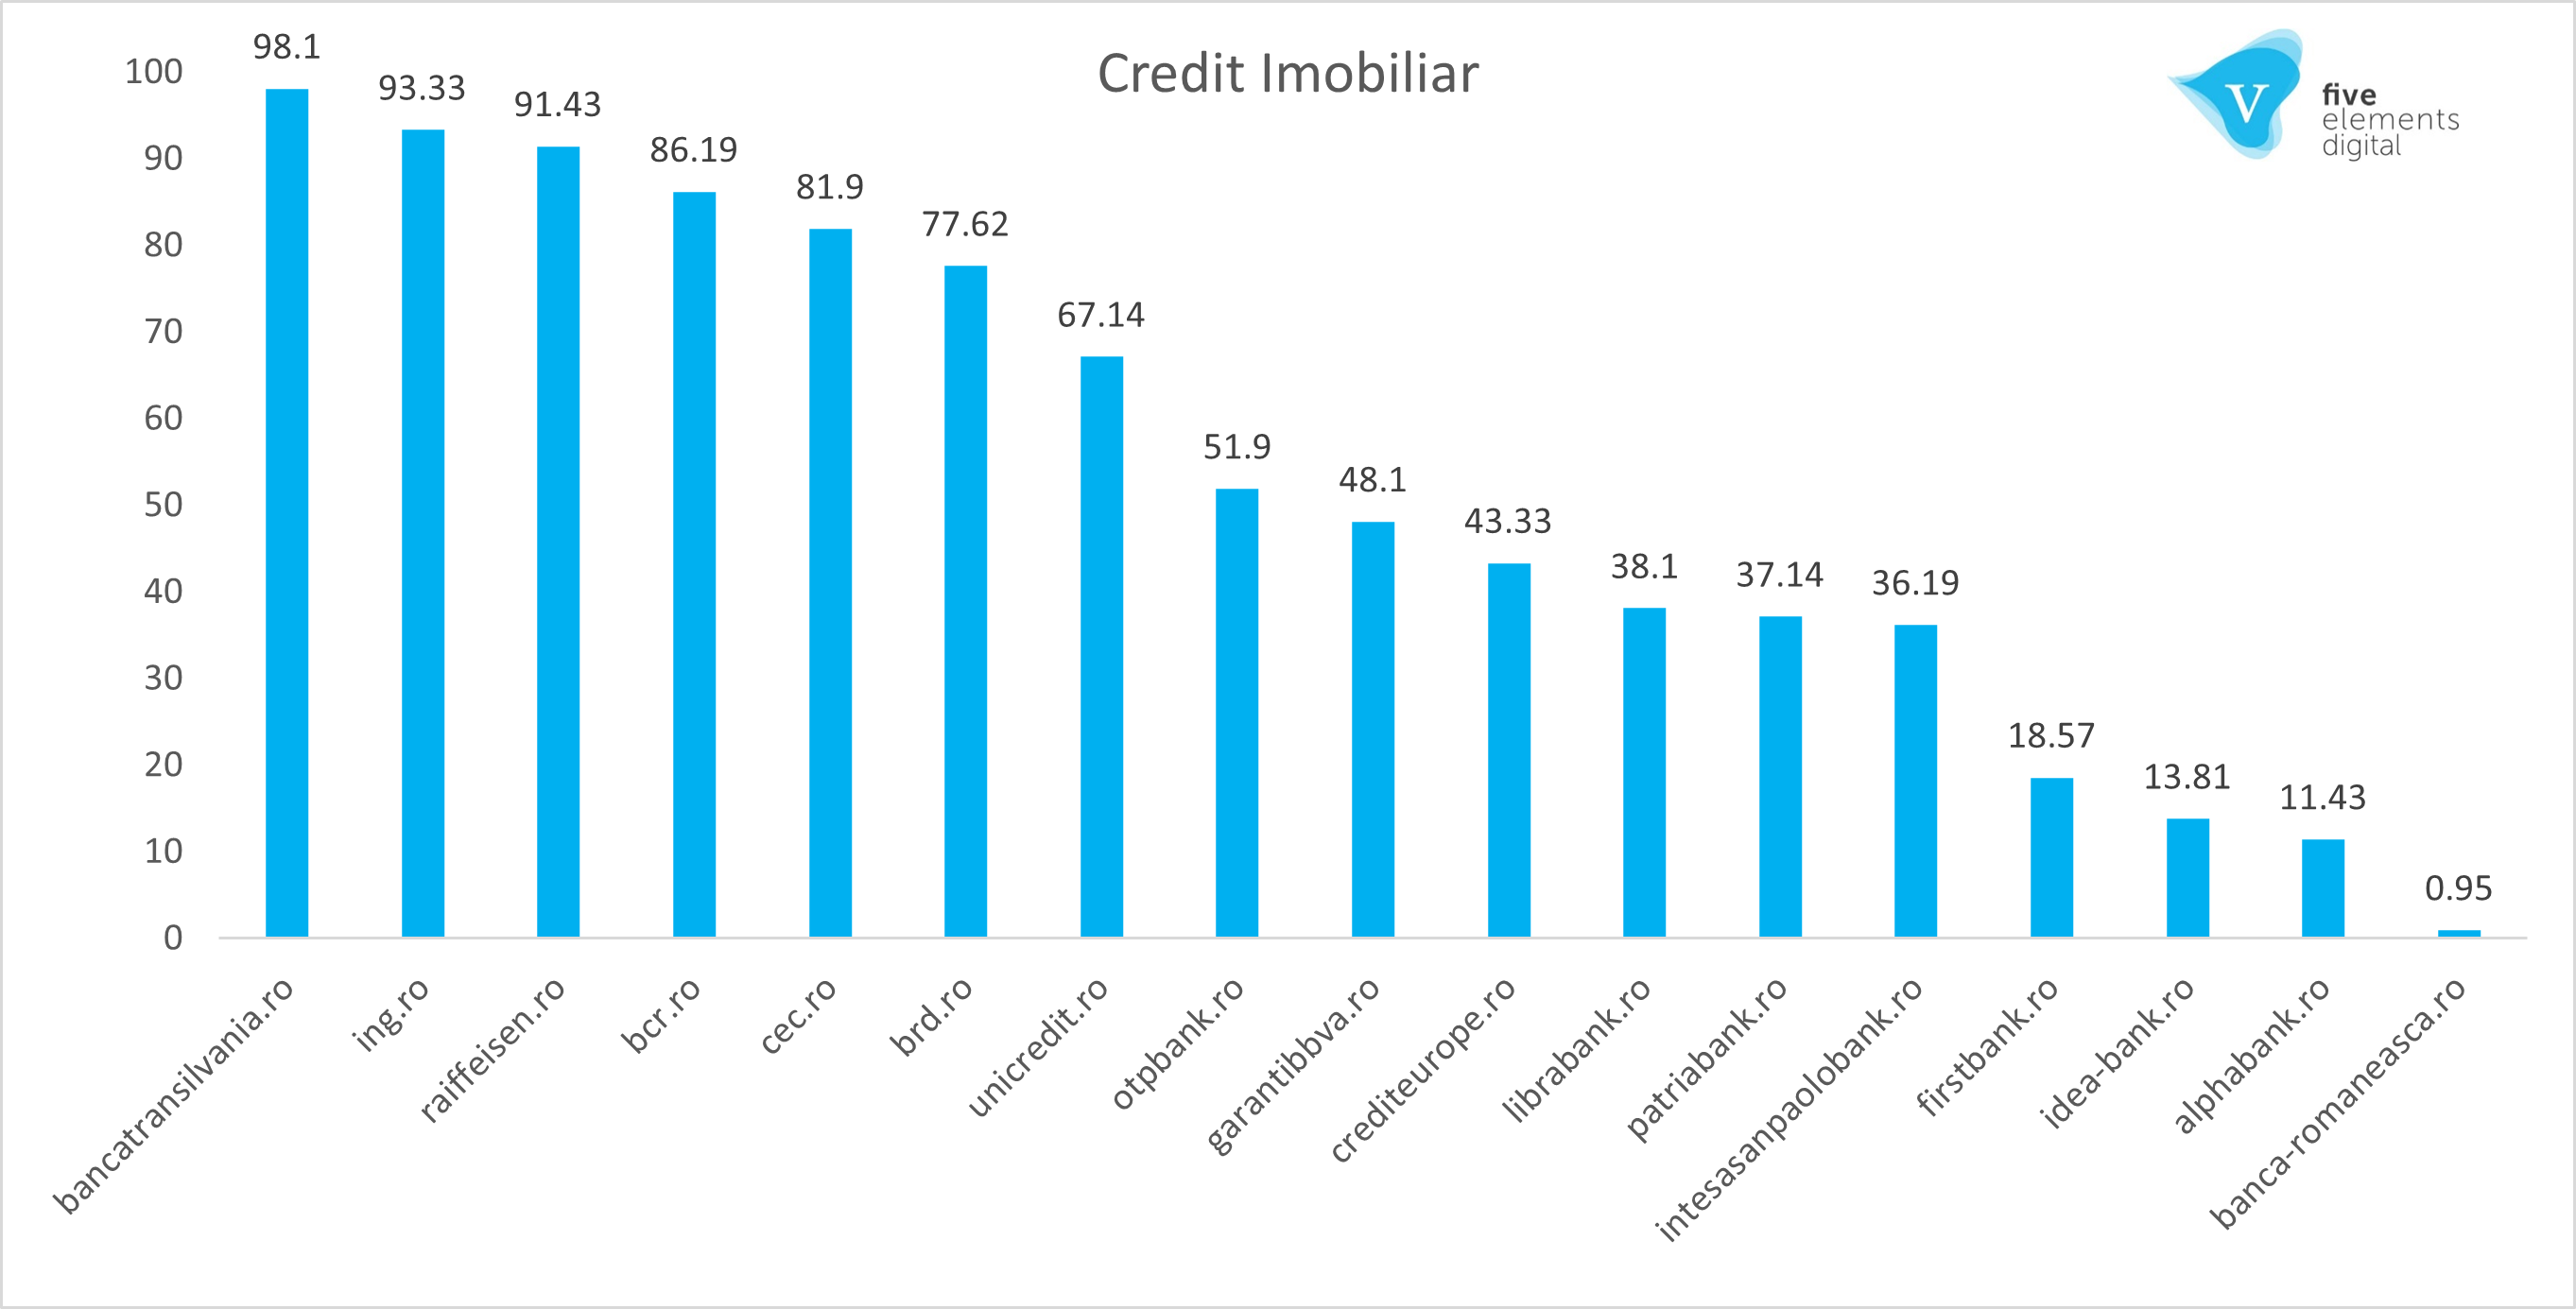 Cele mai vizibile branduri credit imobiliar